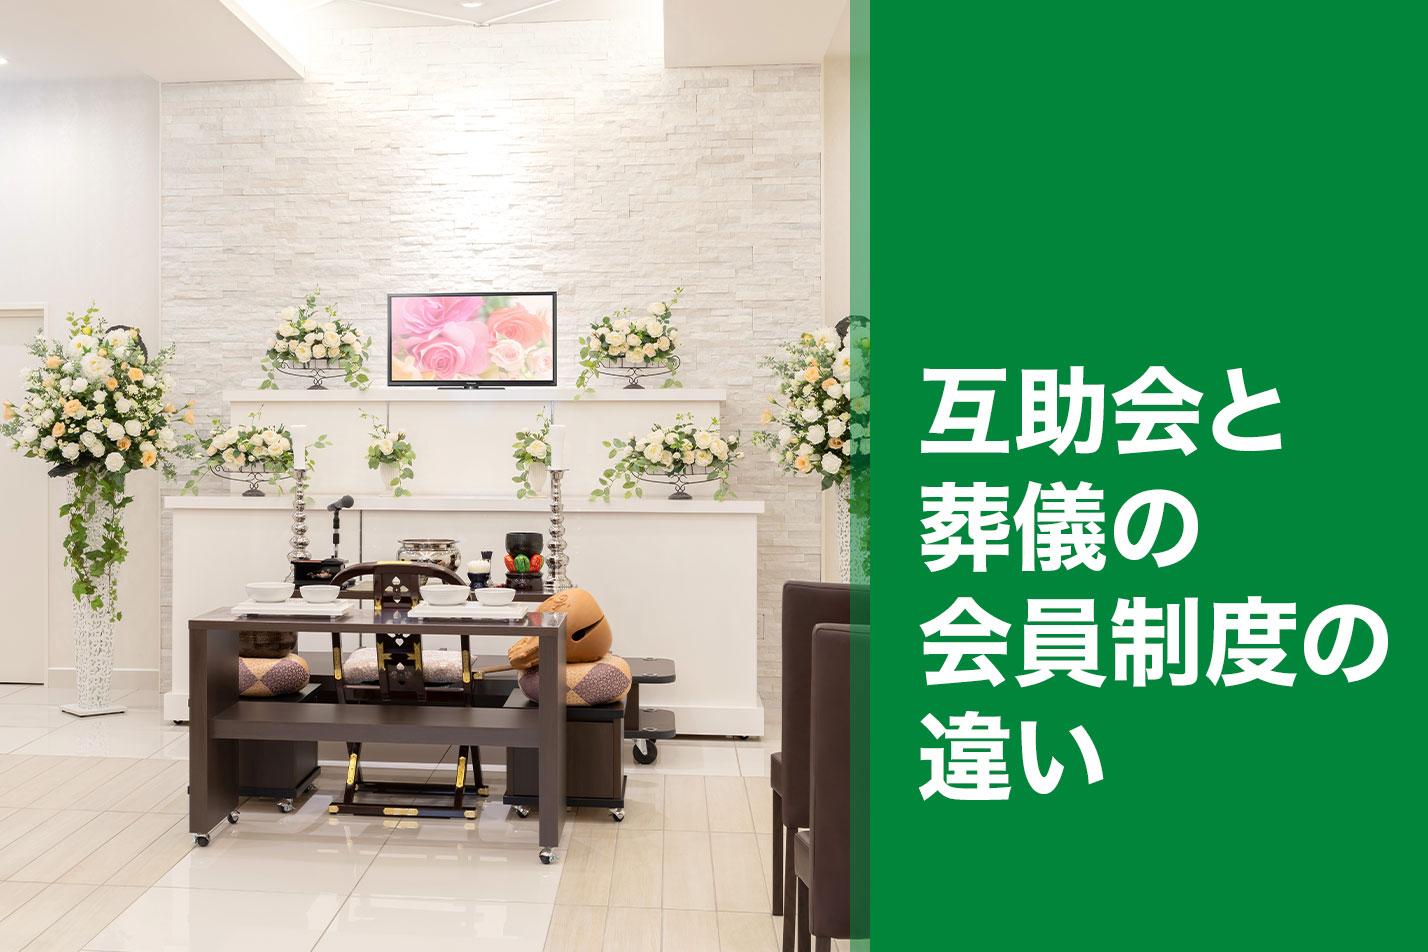  【小平市】互助会と葬儀の会員制度の違いのイメージ画像